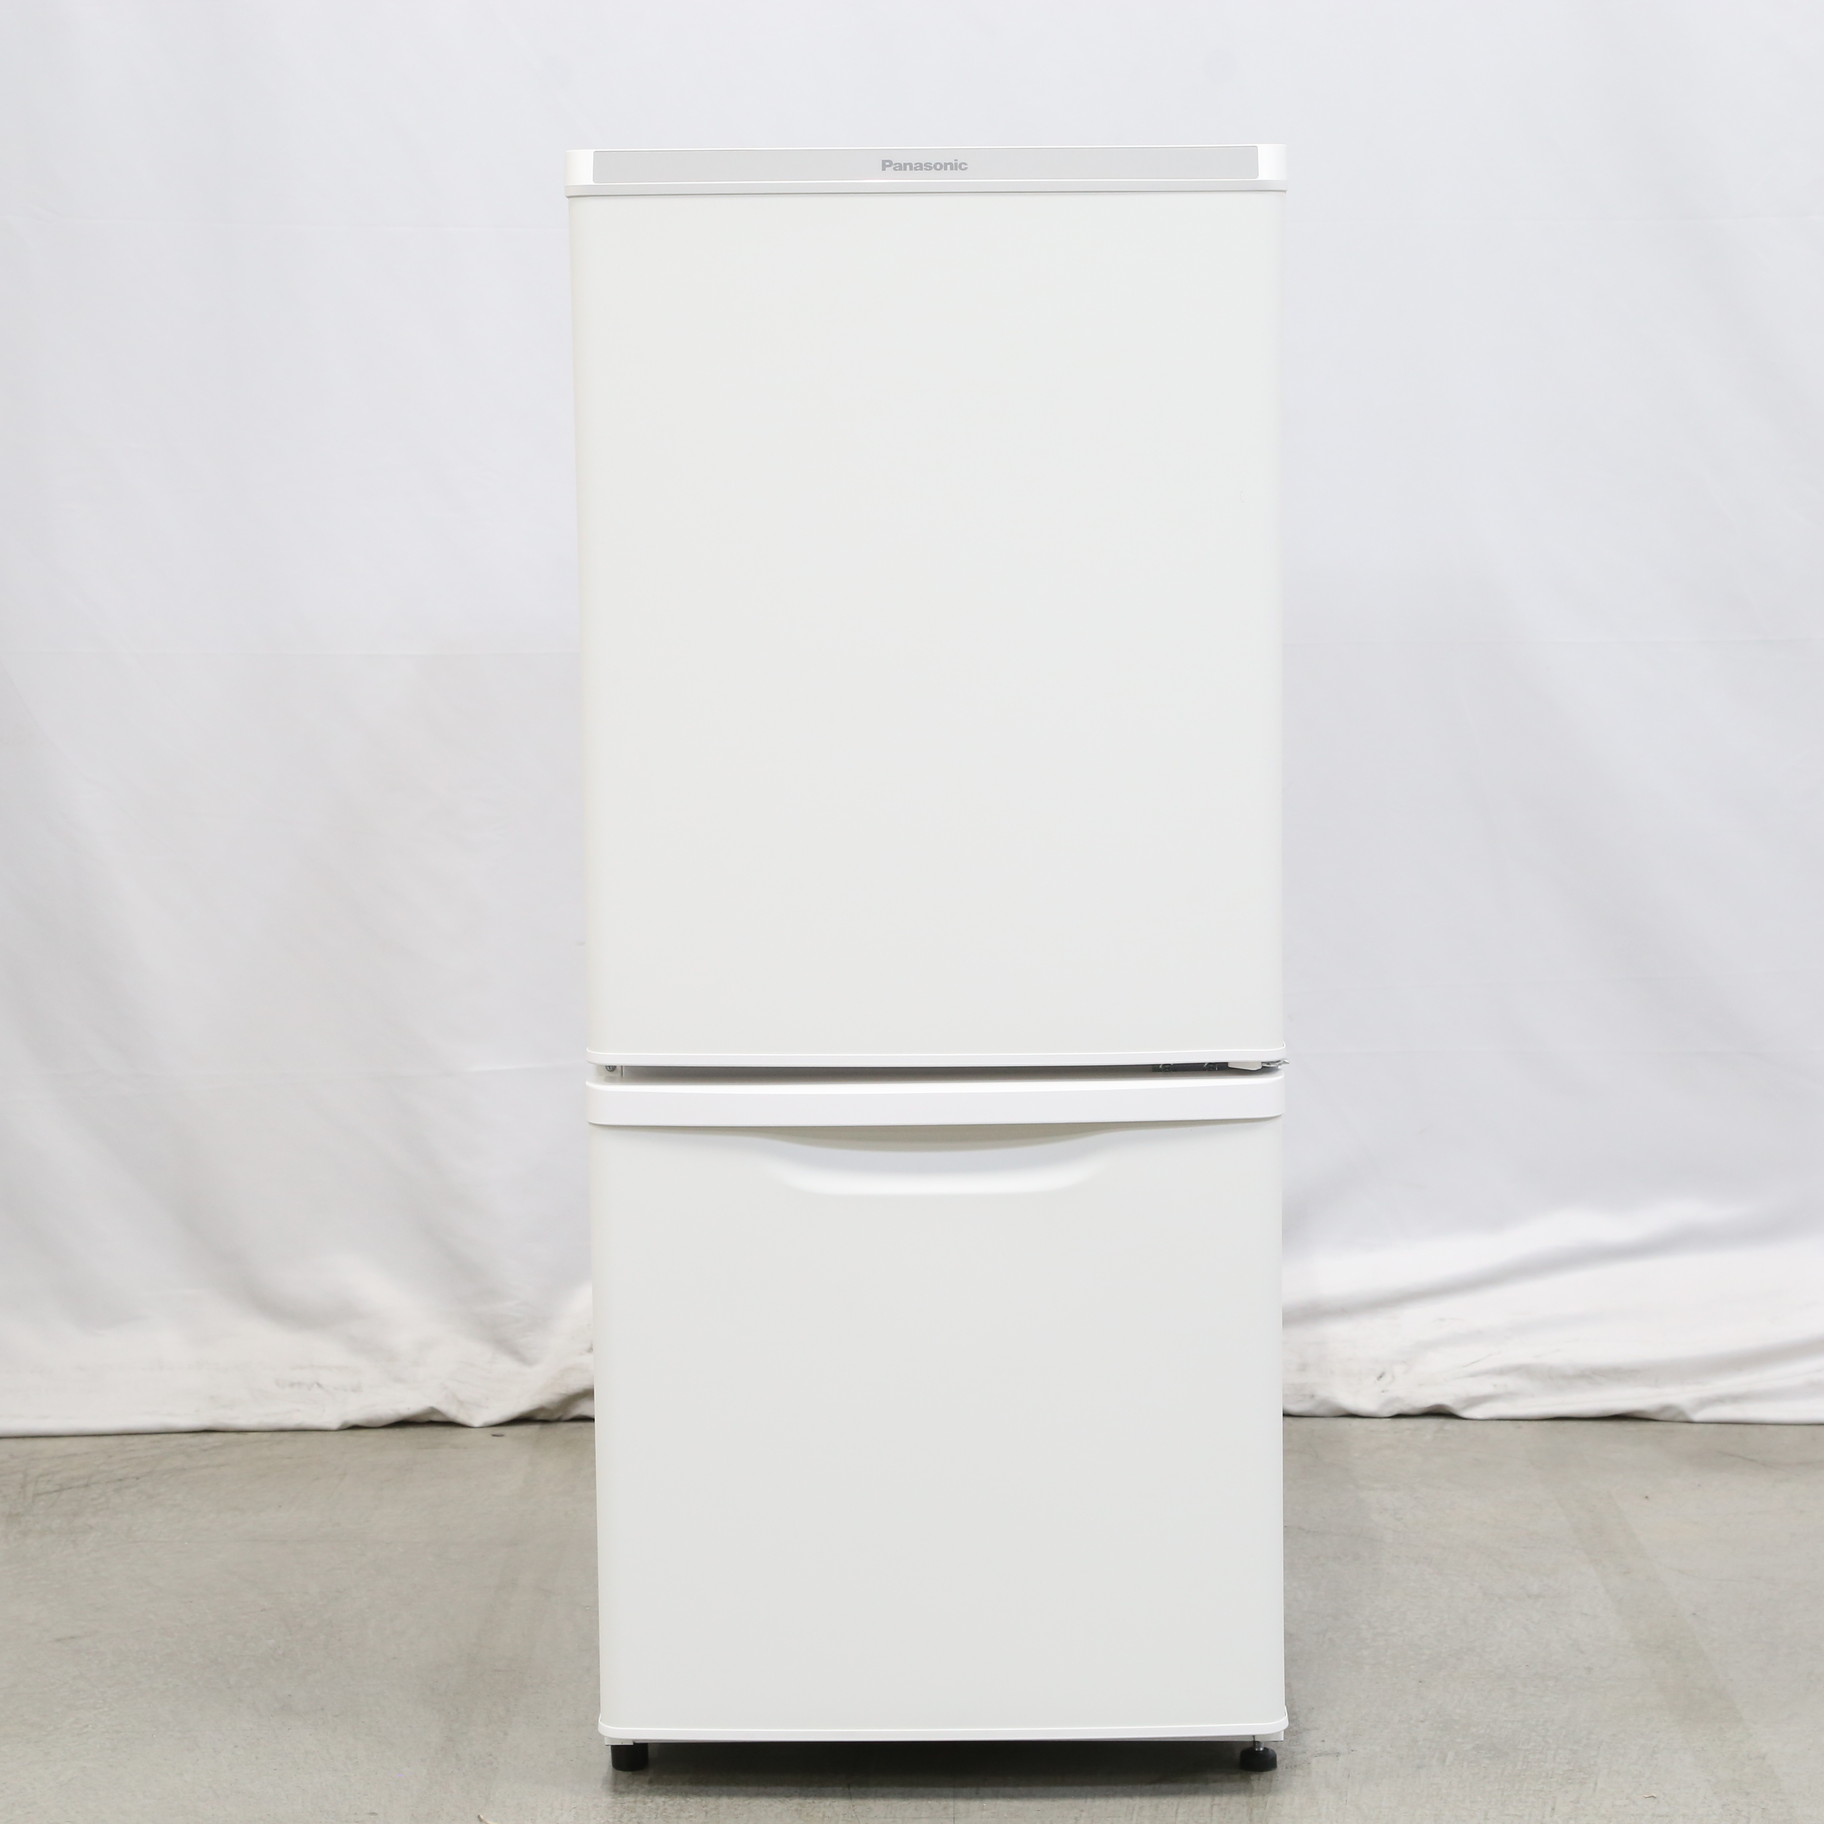 9,400円パナソニック 冷蔵庫 NR-B14DW-T 2021年製造